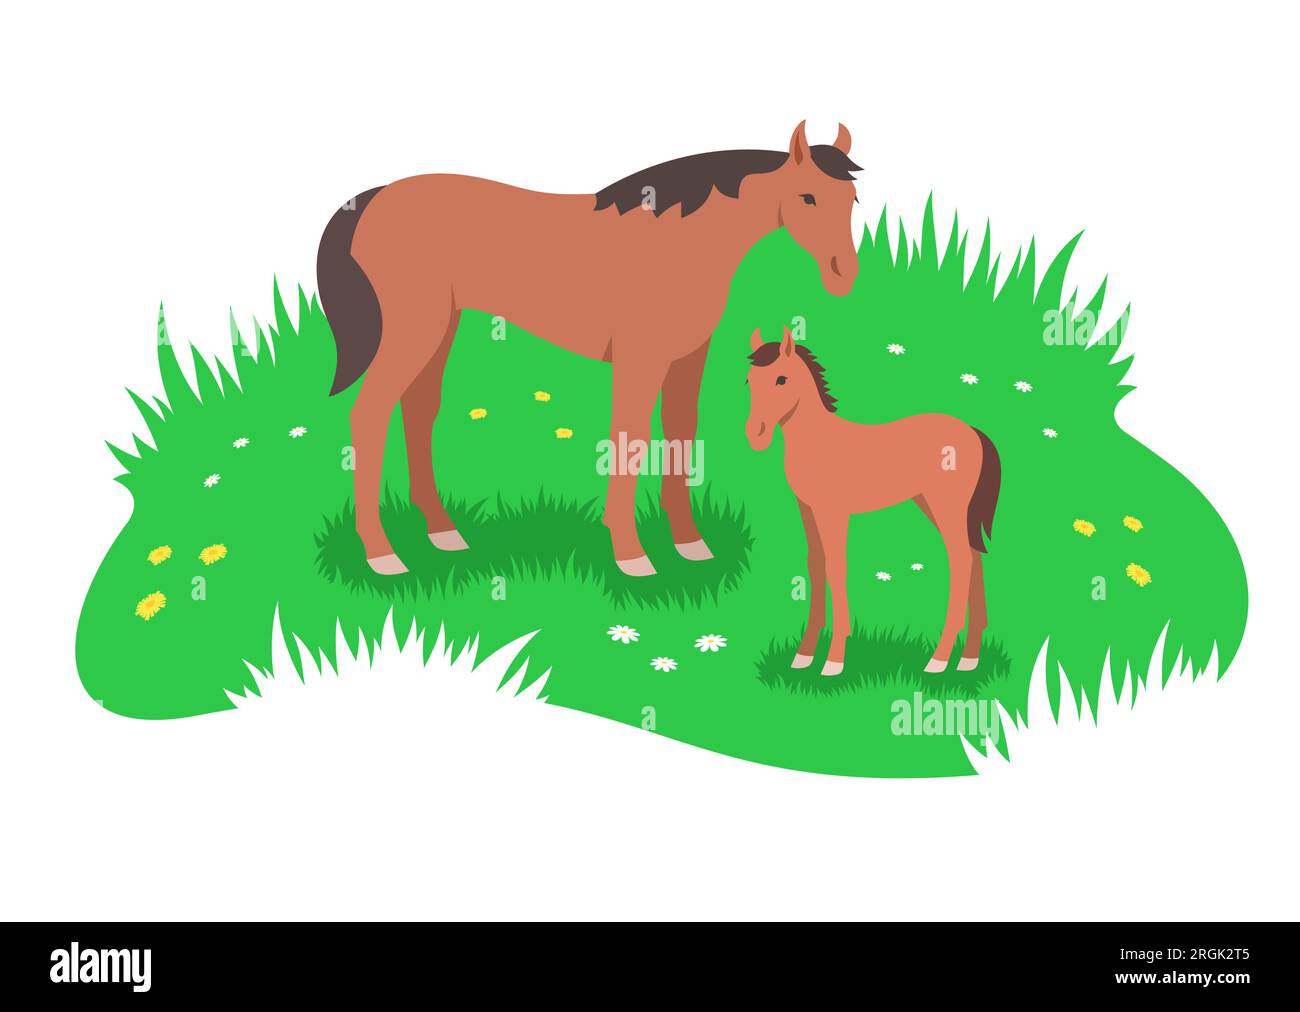 Caballo marrón y su pequeño potro grasing en el prado de flores verdes. Simple ilustración plana estilizada Ilustración del Vector